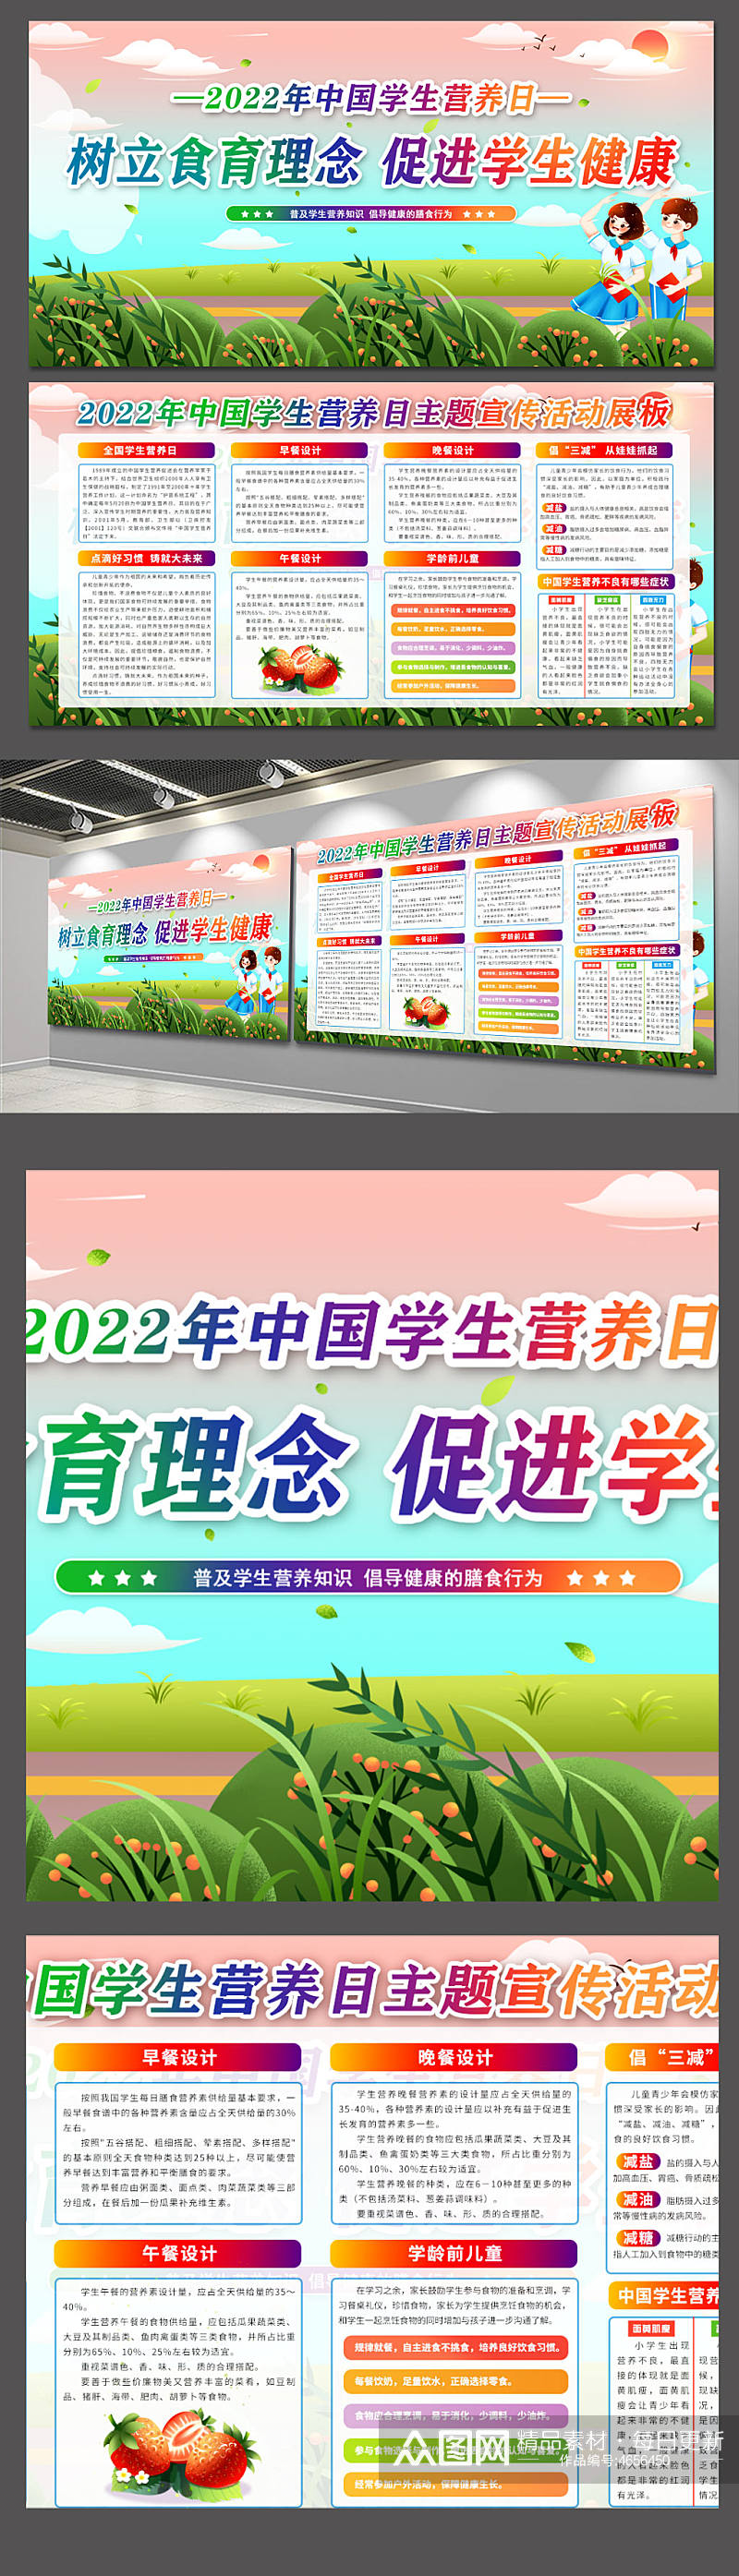 2022年中国学生营养日素材